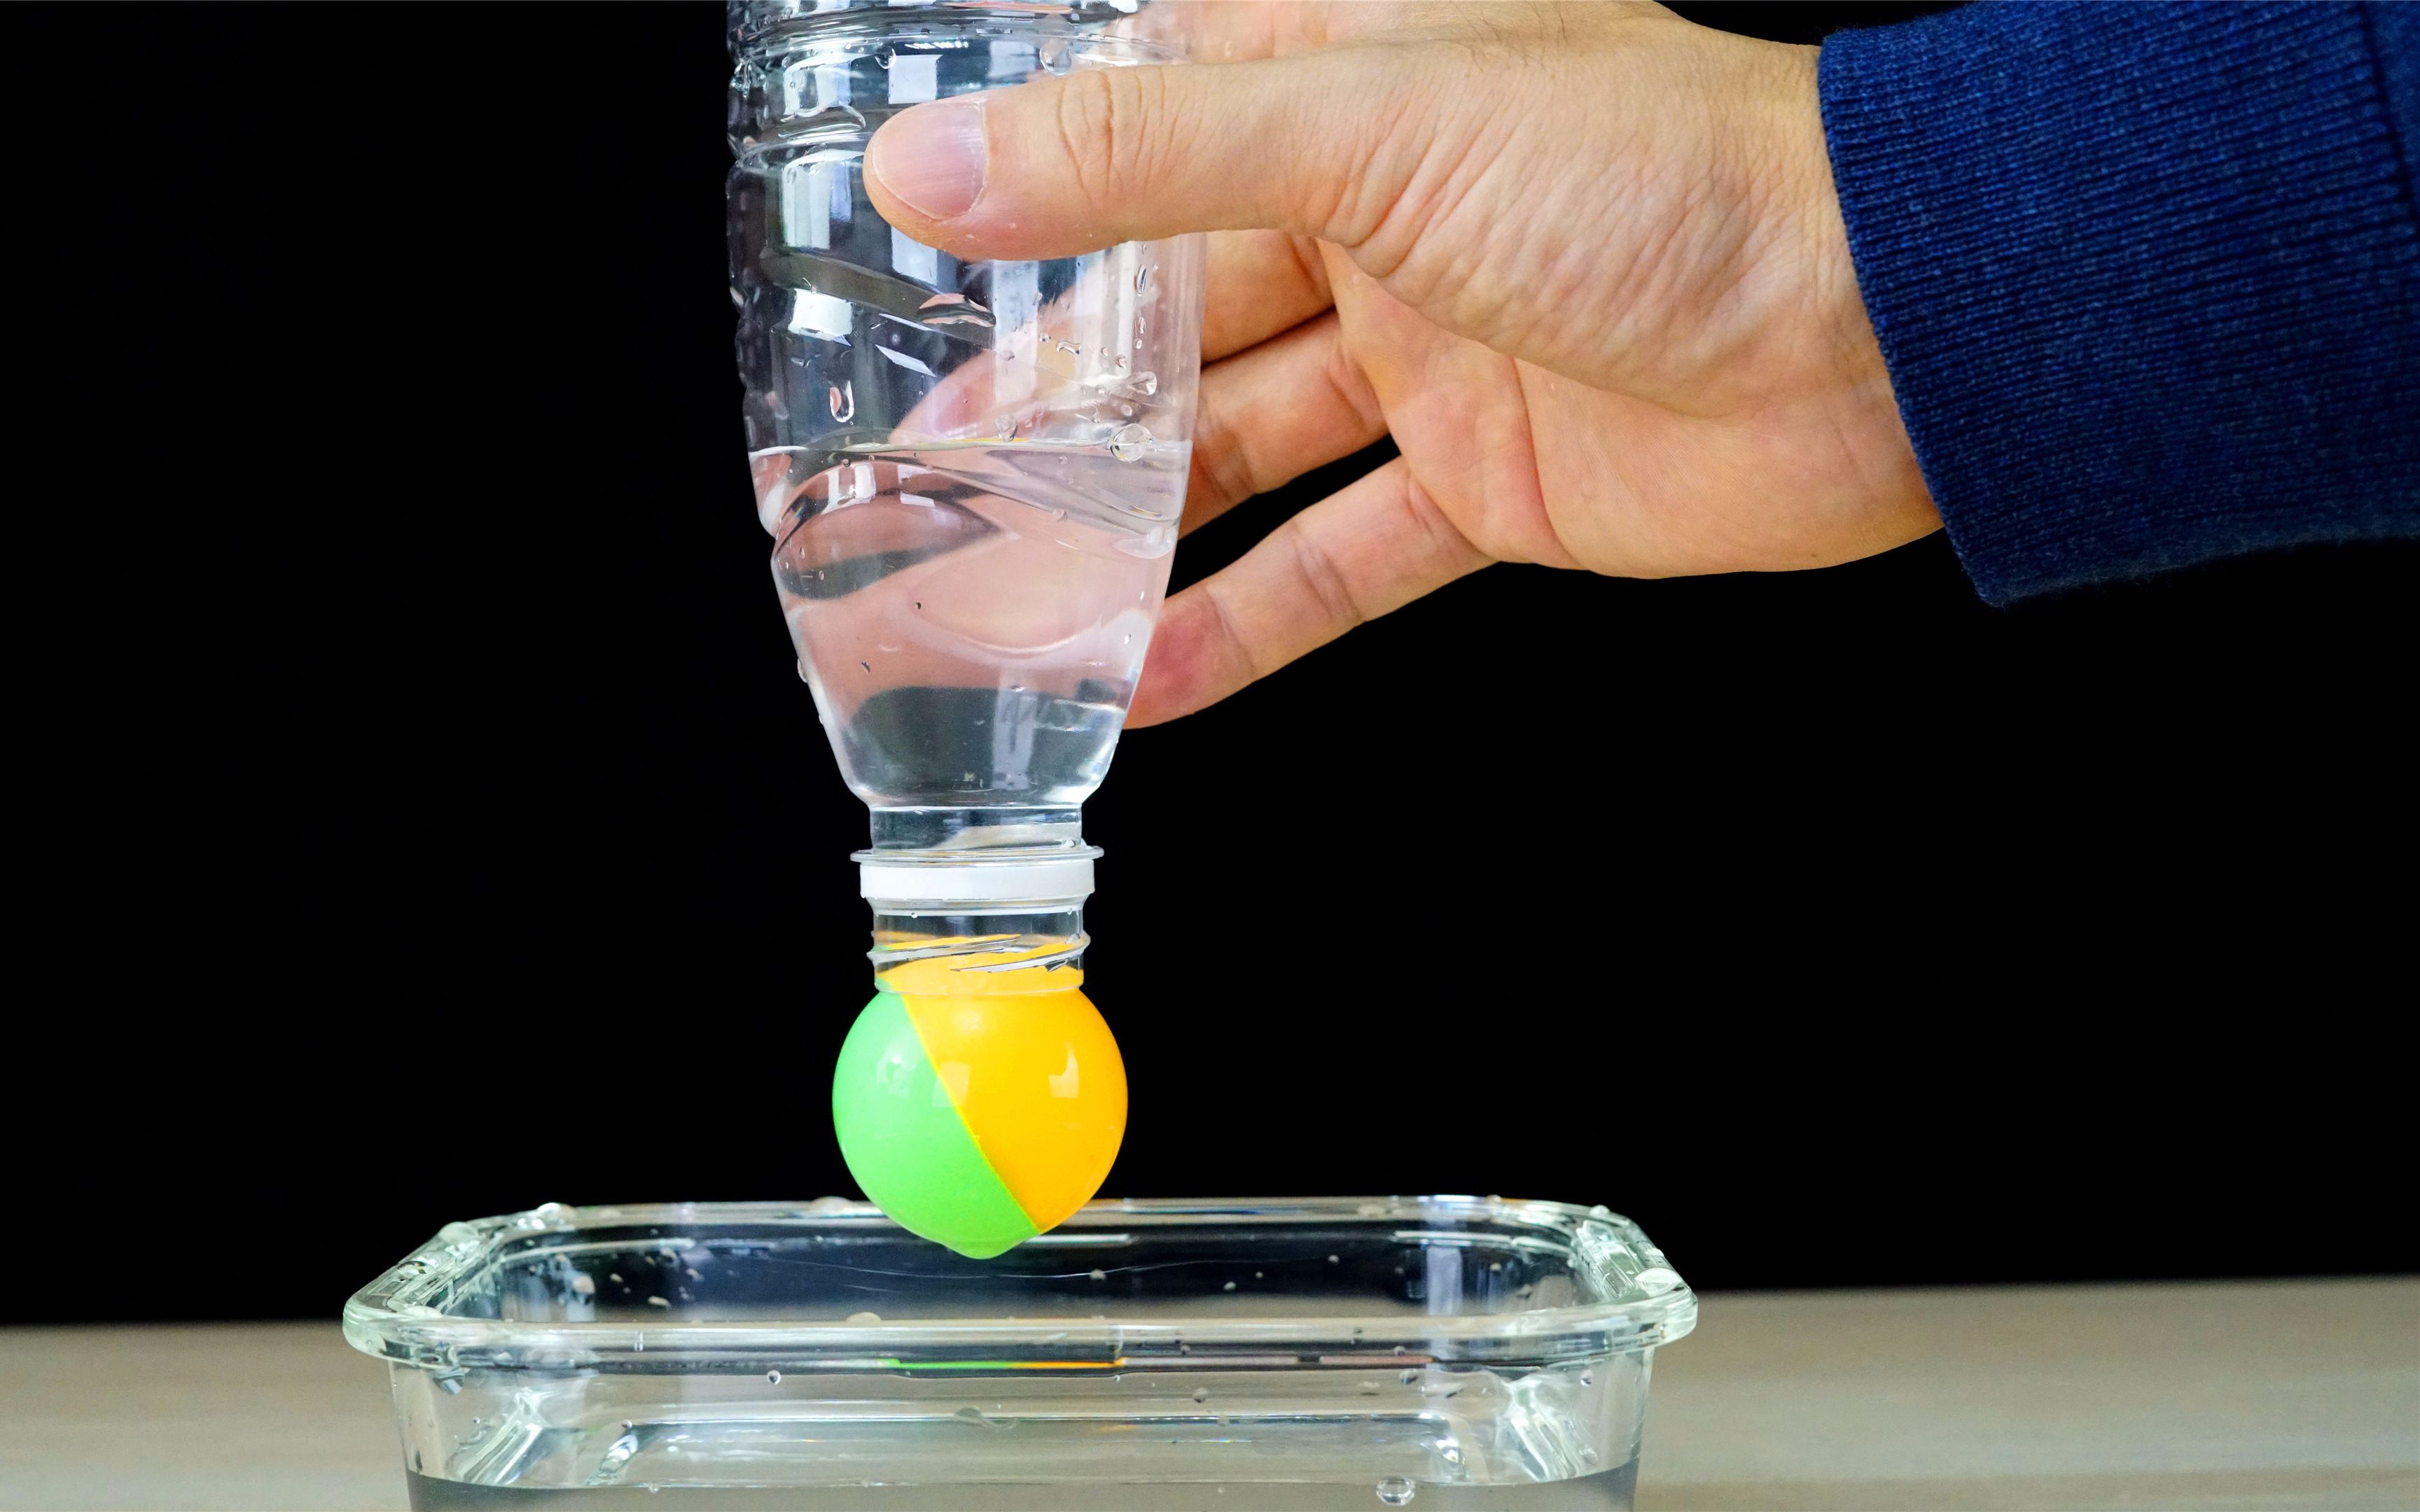 【魔力科学小实验】(第134期)瓶口朝下敞开,满满一瓶水竟然被一个乒乓